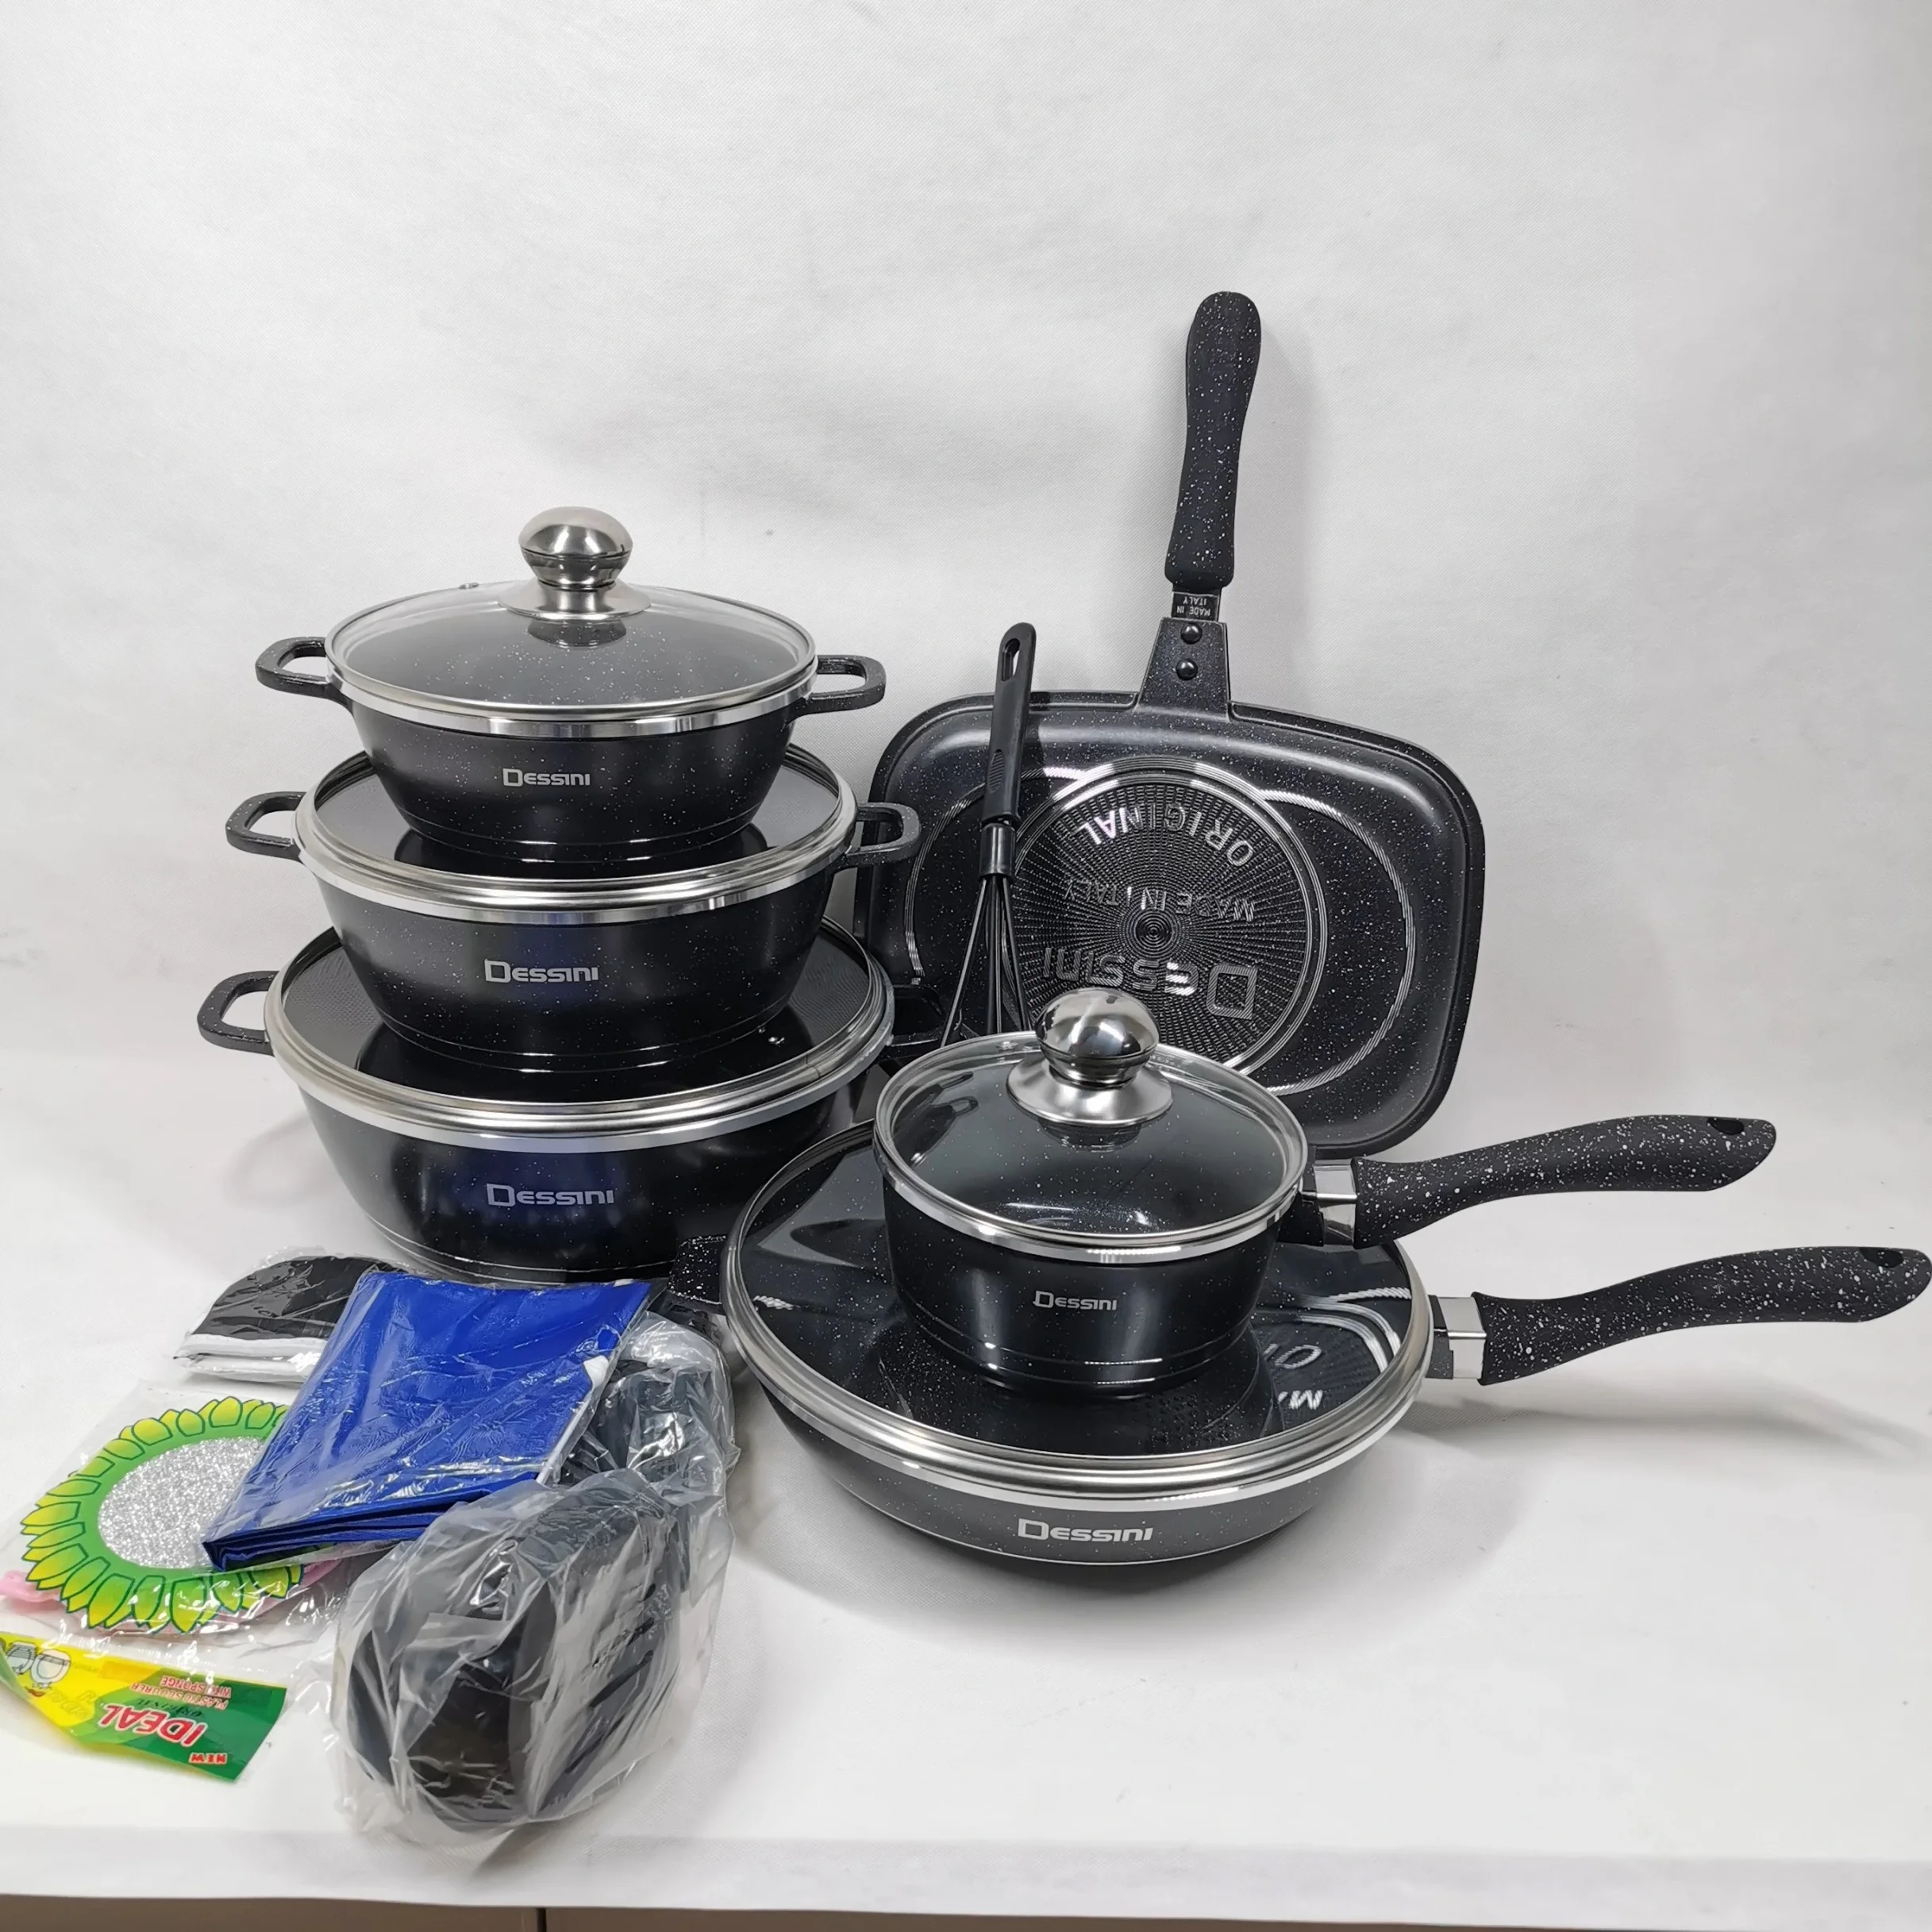 Dessini 23pcs non stick cast aluminum pots sets cooking cookware set pots and pans with glass lid